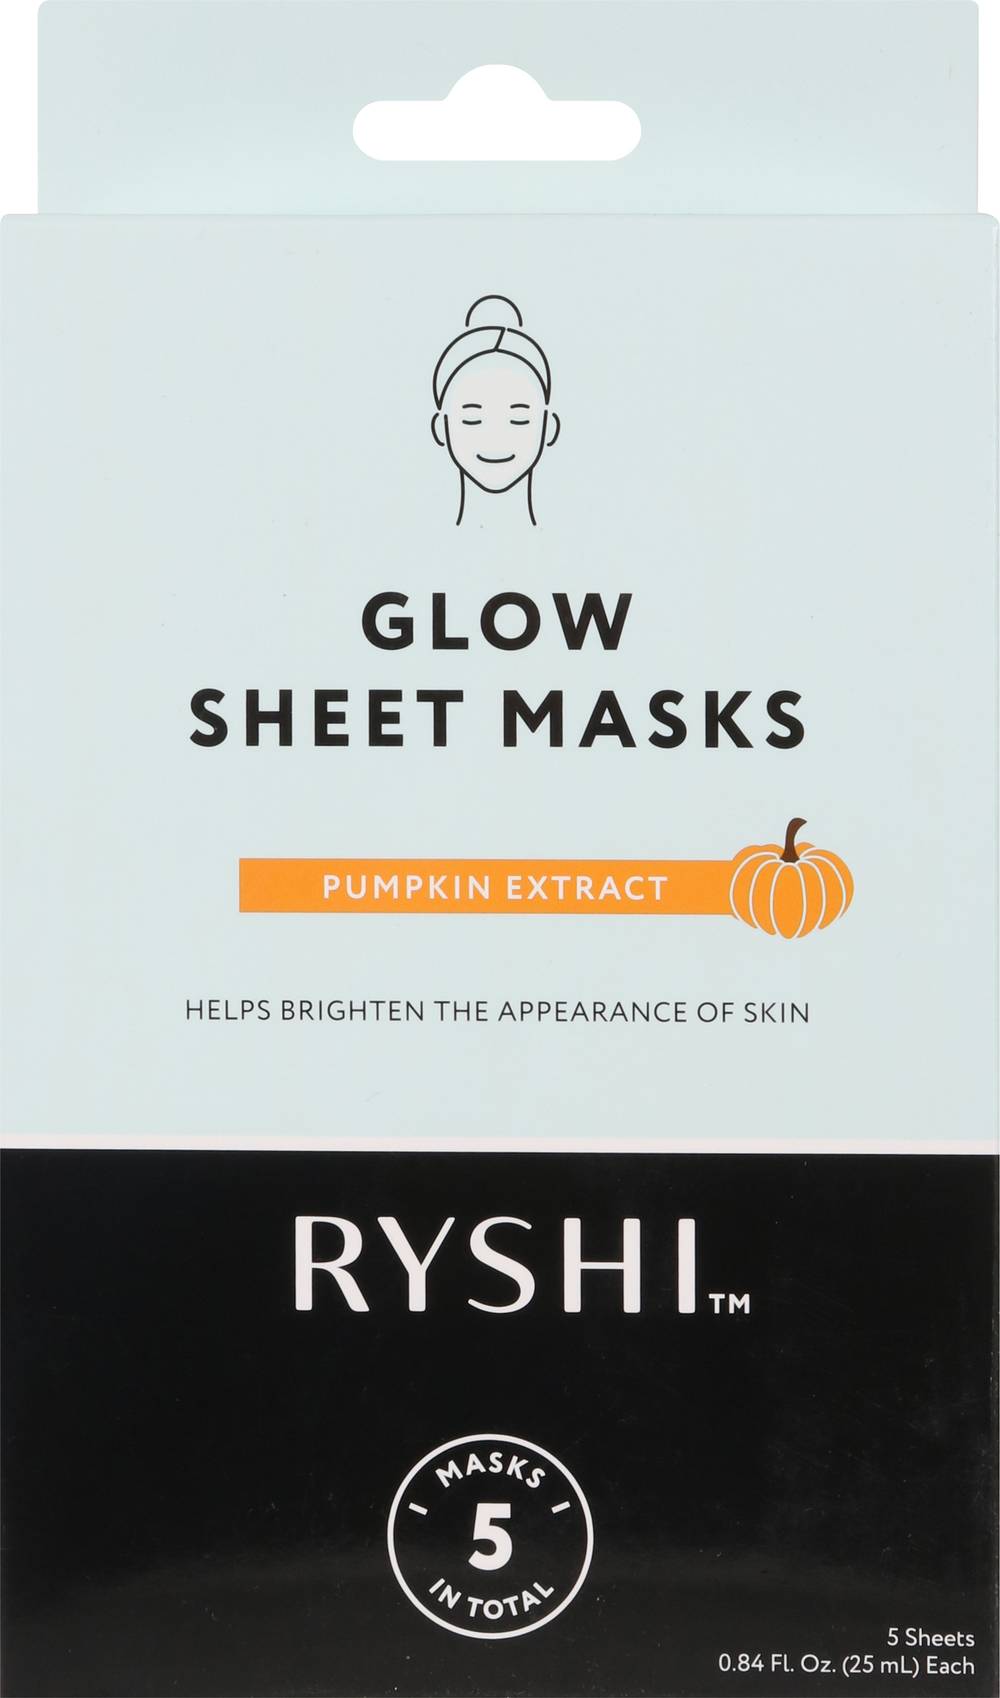 Ryshi Pumpkin Sheet Masks